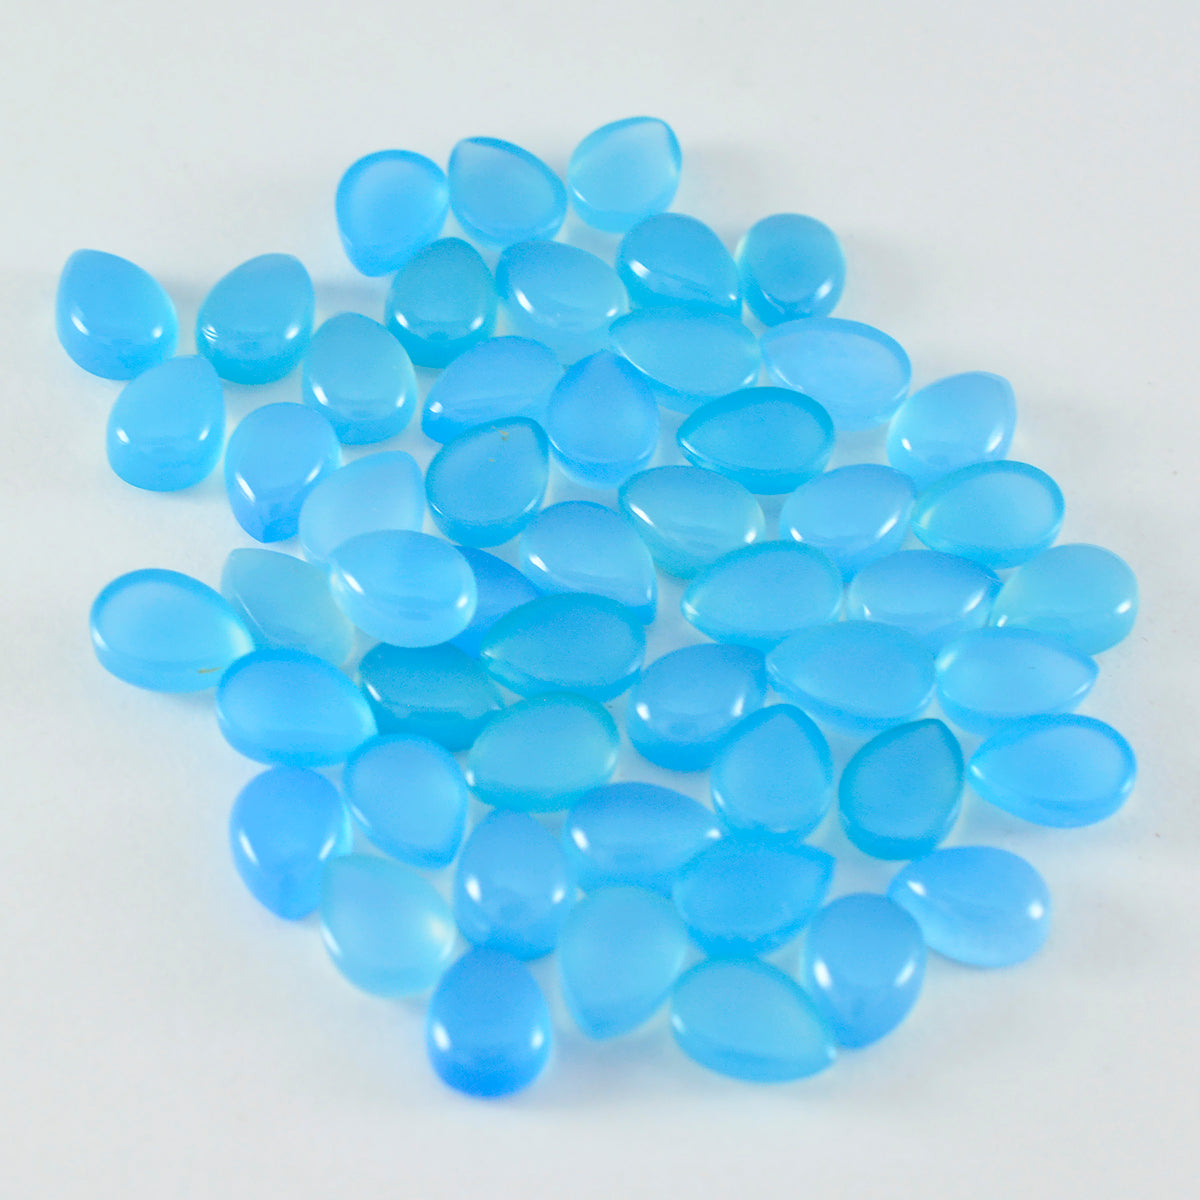 Riyogems 1PC Blue Chalcedony Cabochon 4x6 mm Pear Shape A Quality Gemstone